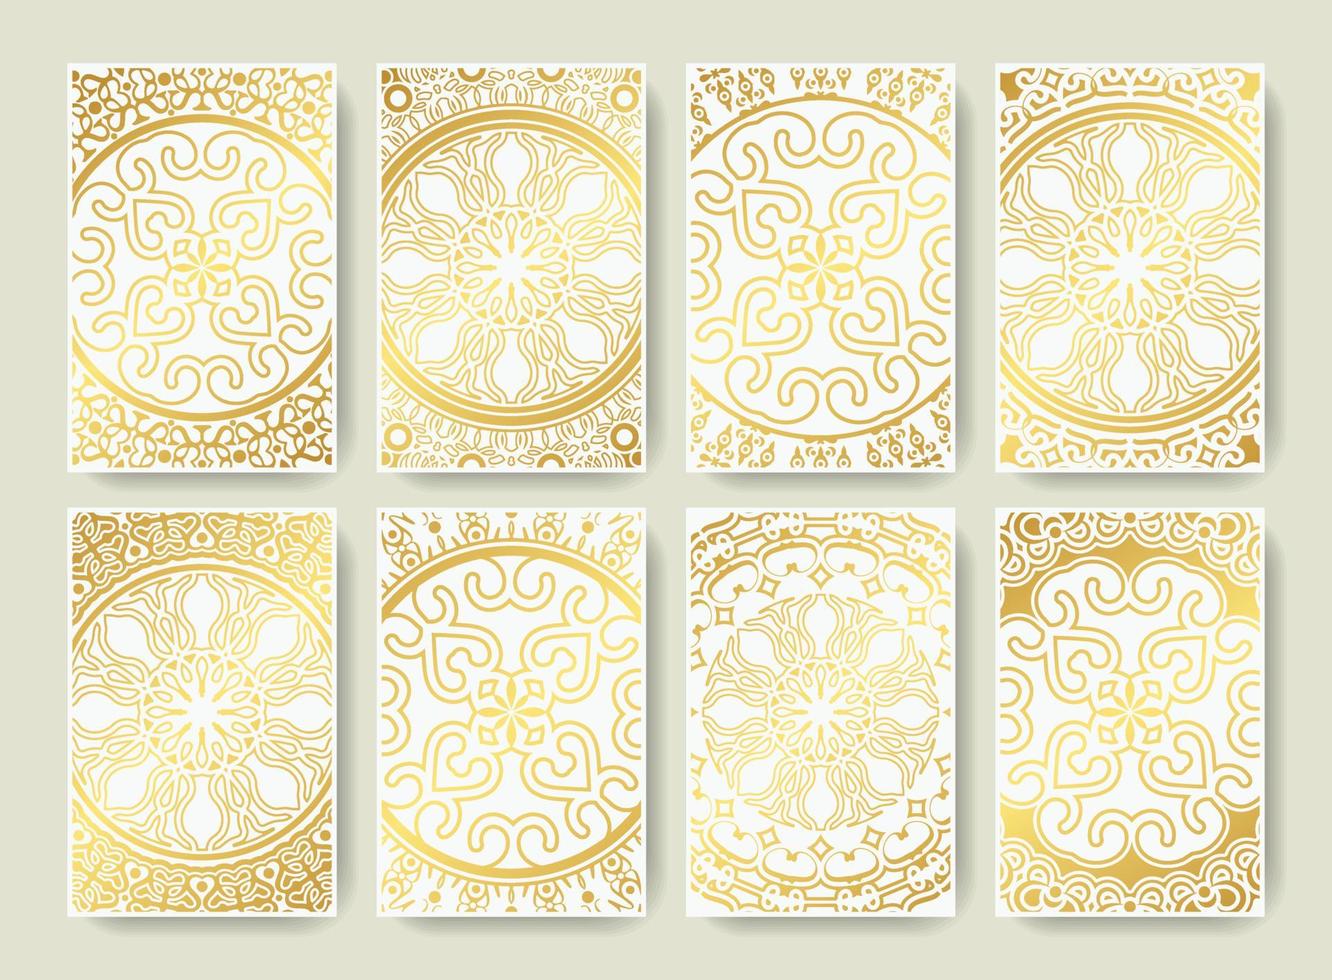 carta mandala bianca di lusso con motivo ornamentale floreale vettore